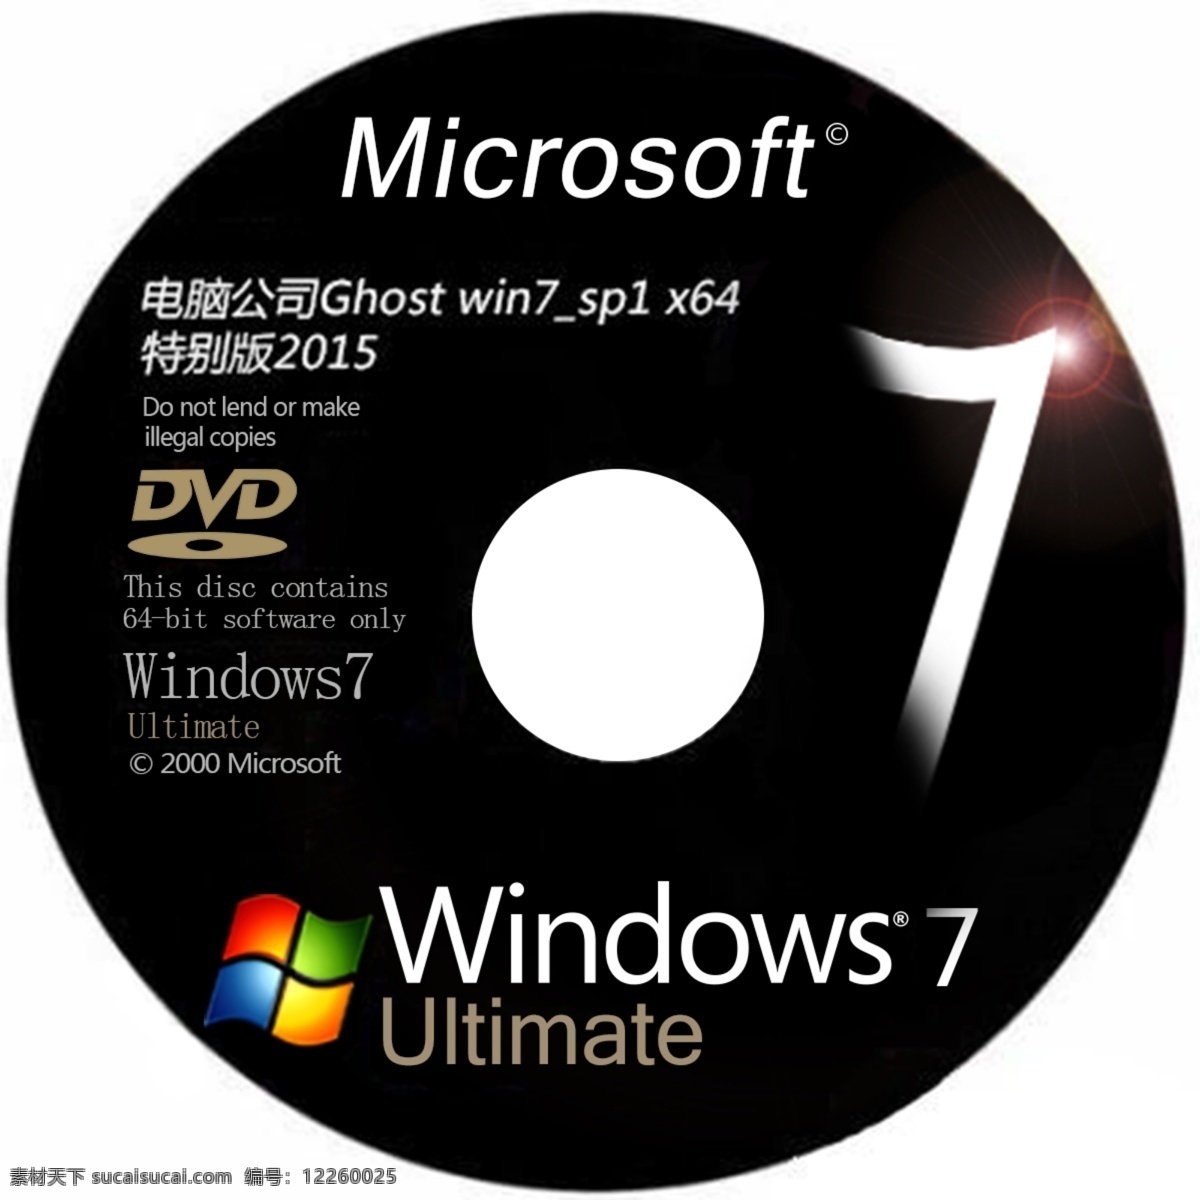 微软 光盘 win7 光碟设计 微软光盘 原创设计 其他原创设计